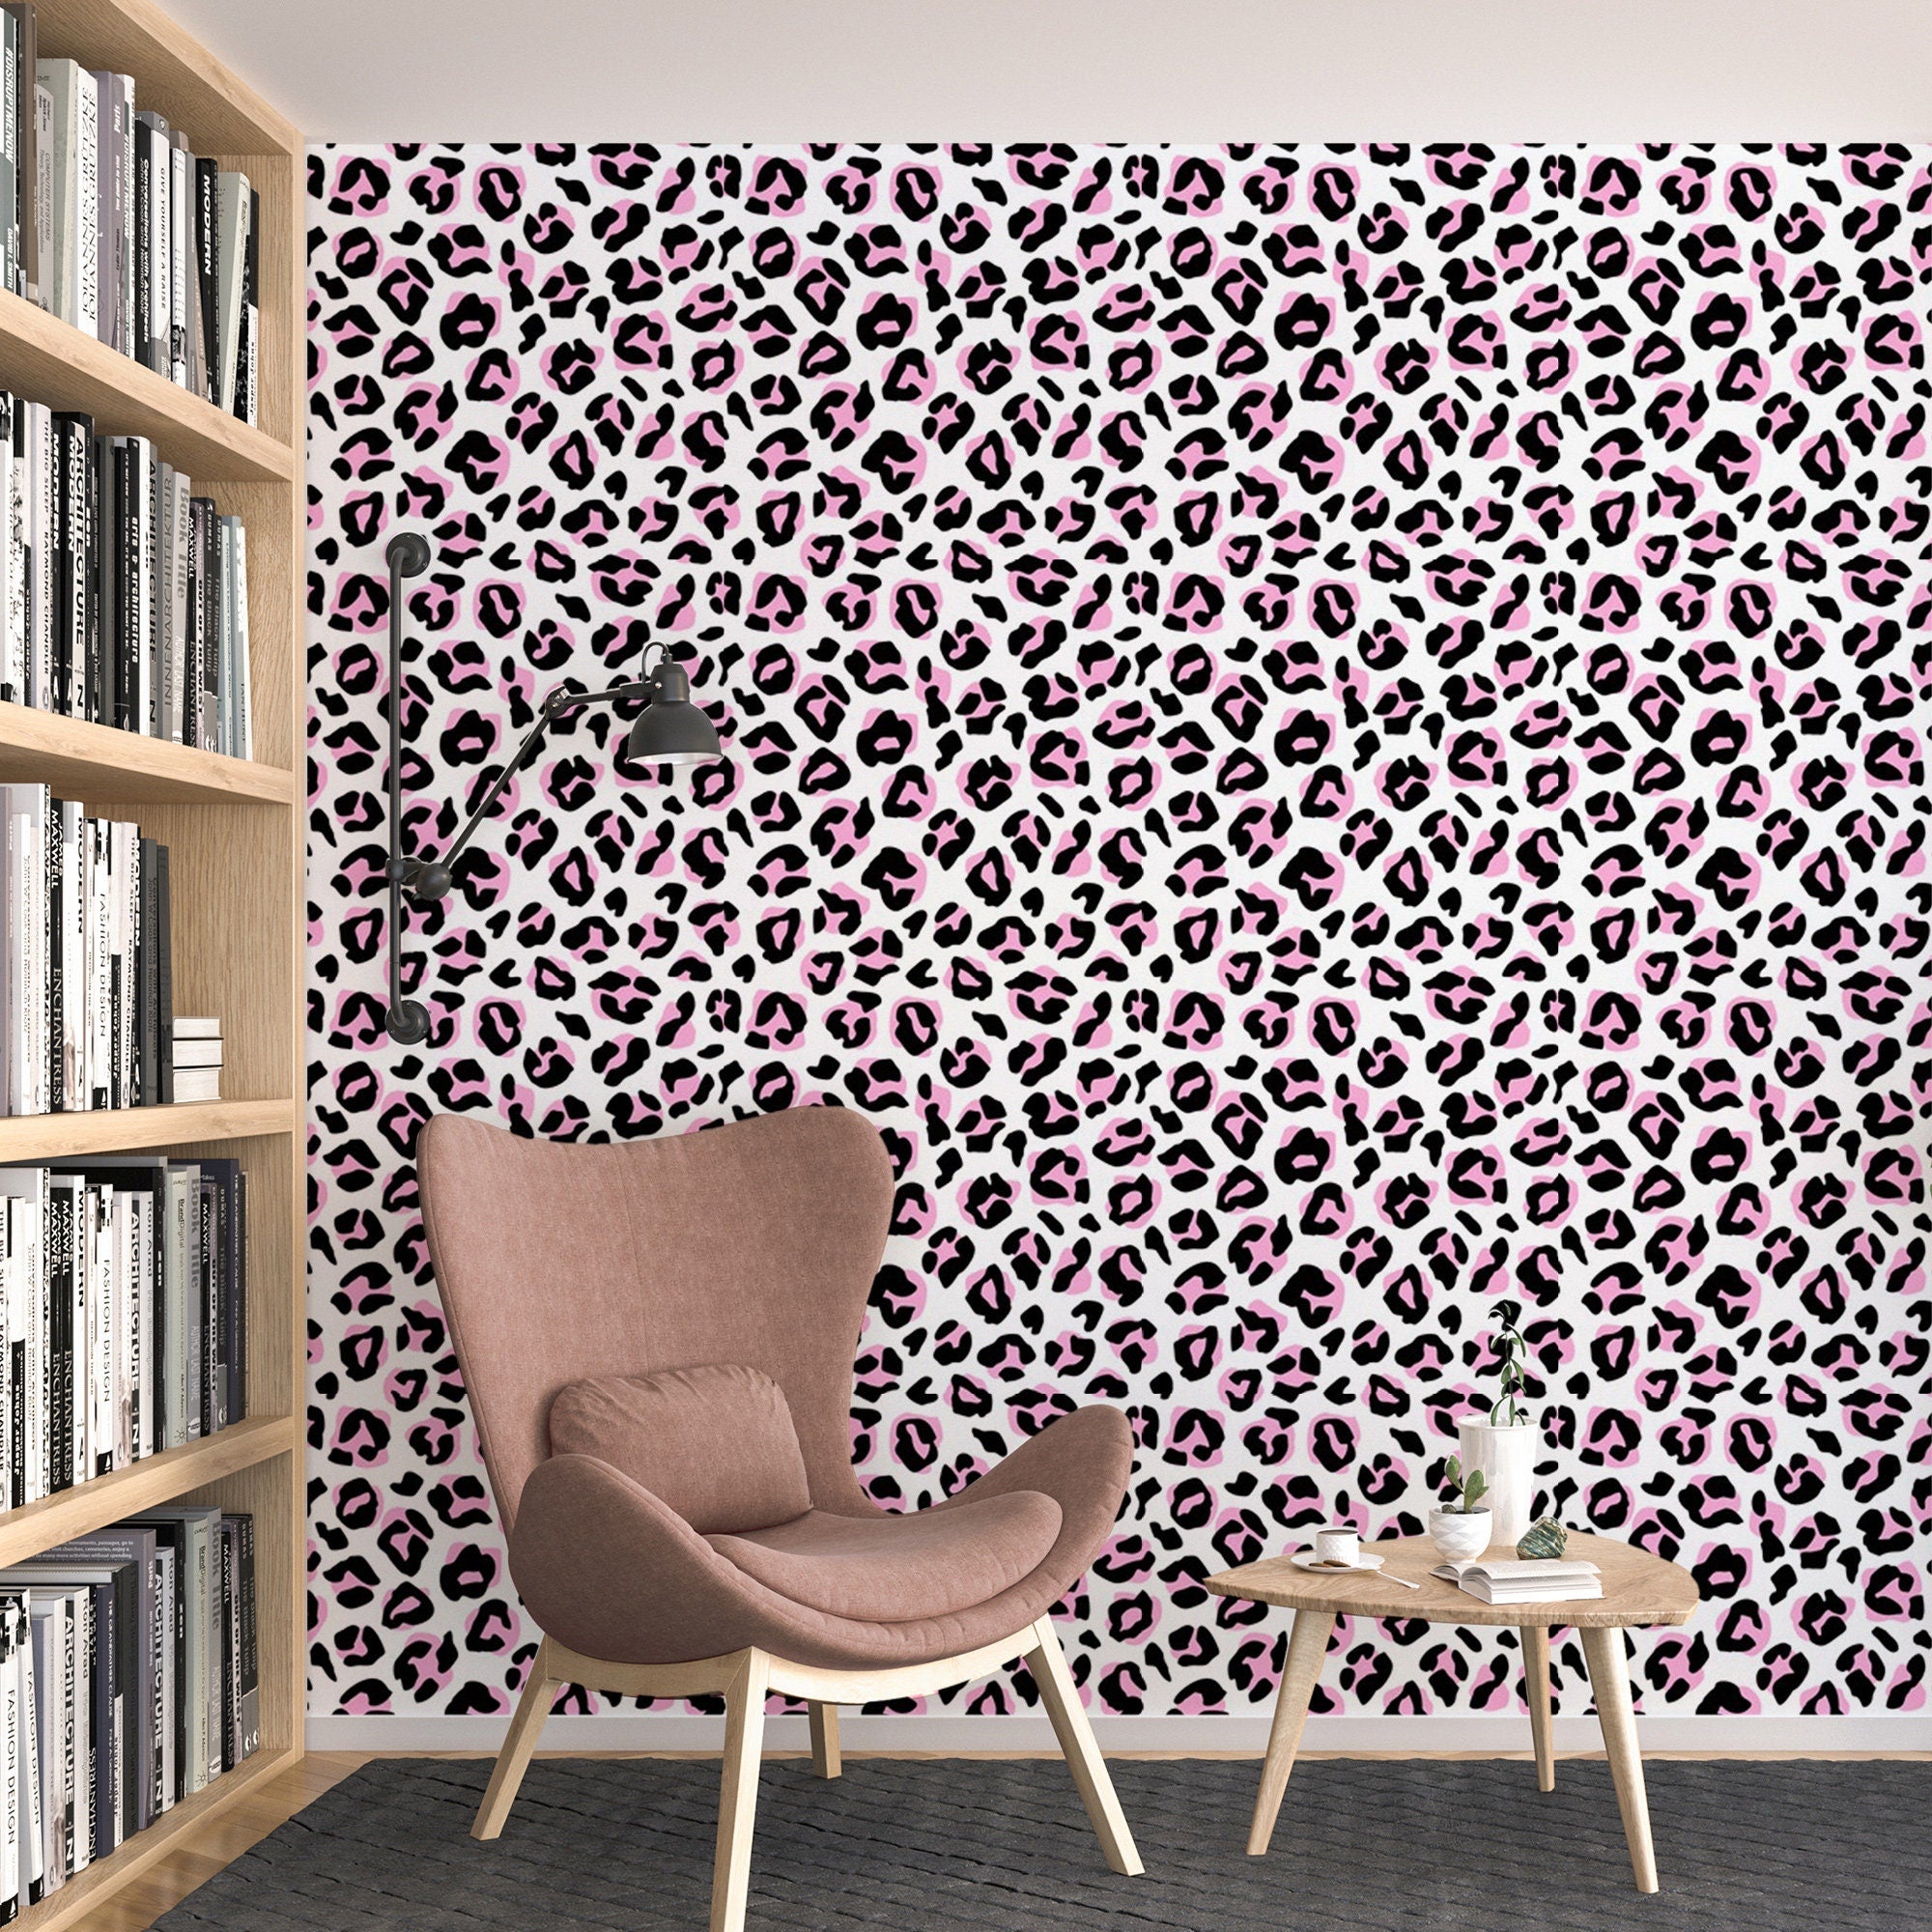 Red Animal Print Wallpaper  Phone wallpaper boho, Leopard print wallpaper, Animal  print wallpaper